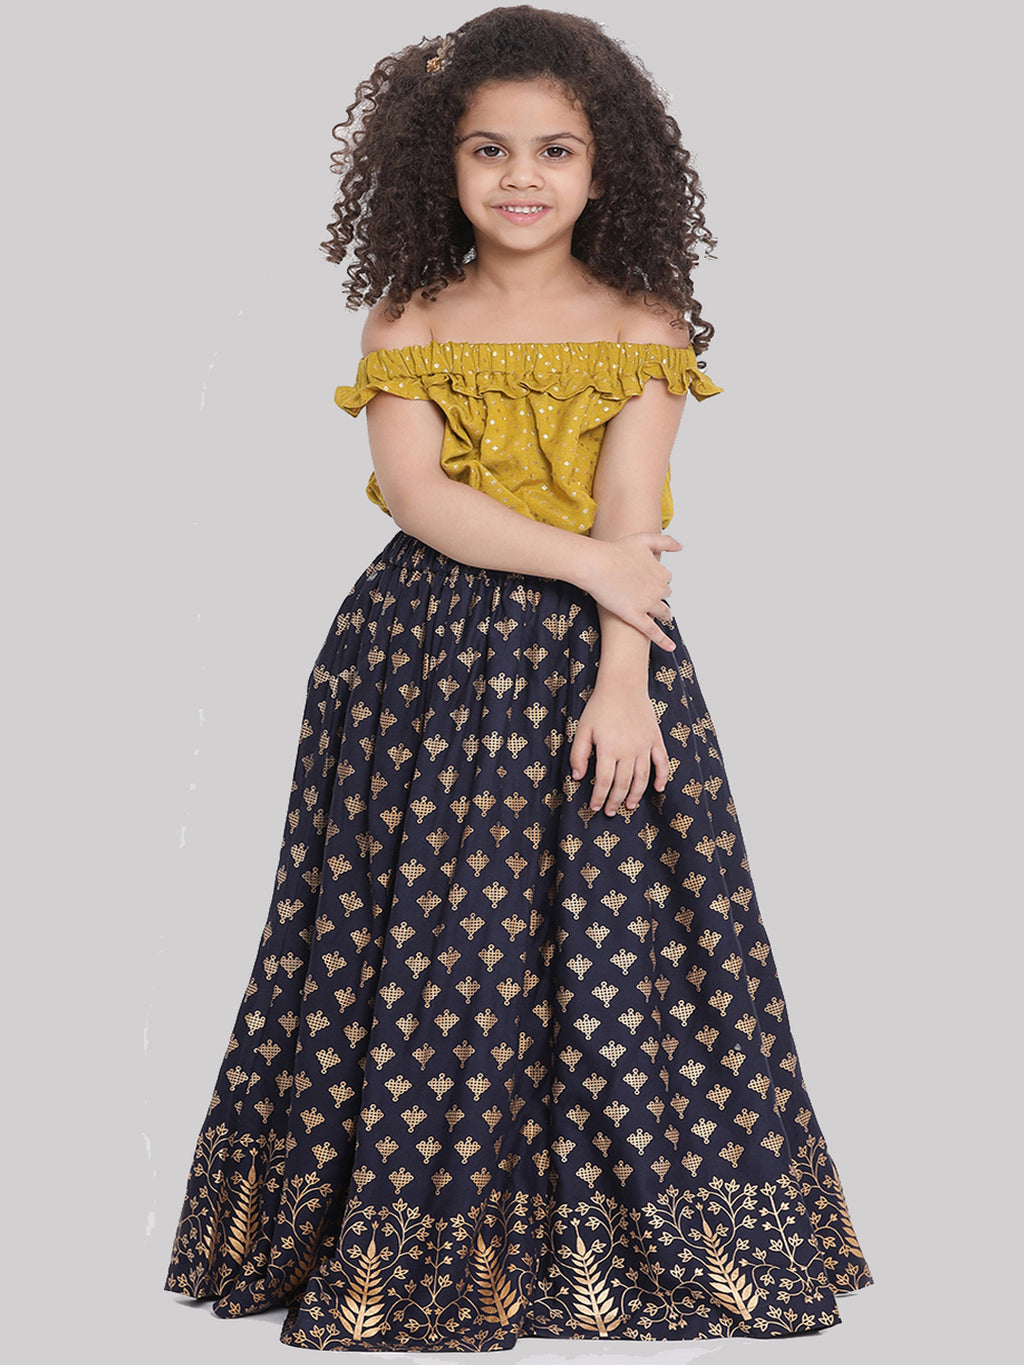 ethnic wear dresses for girls